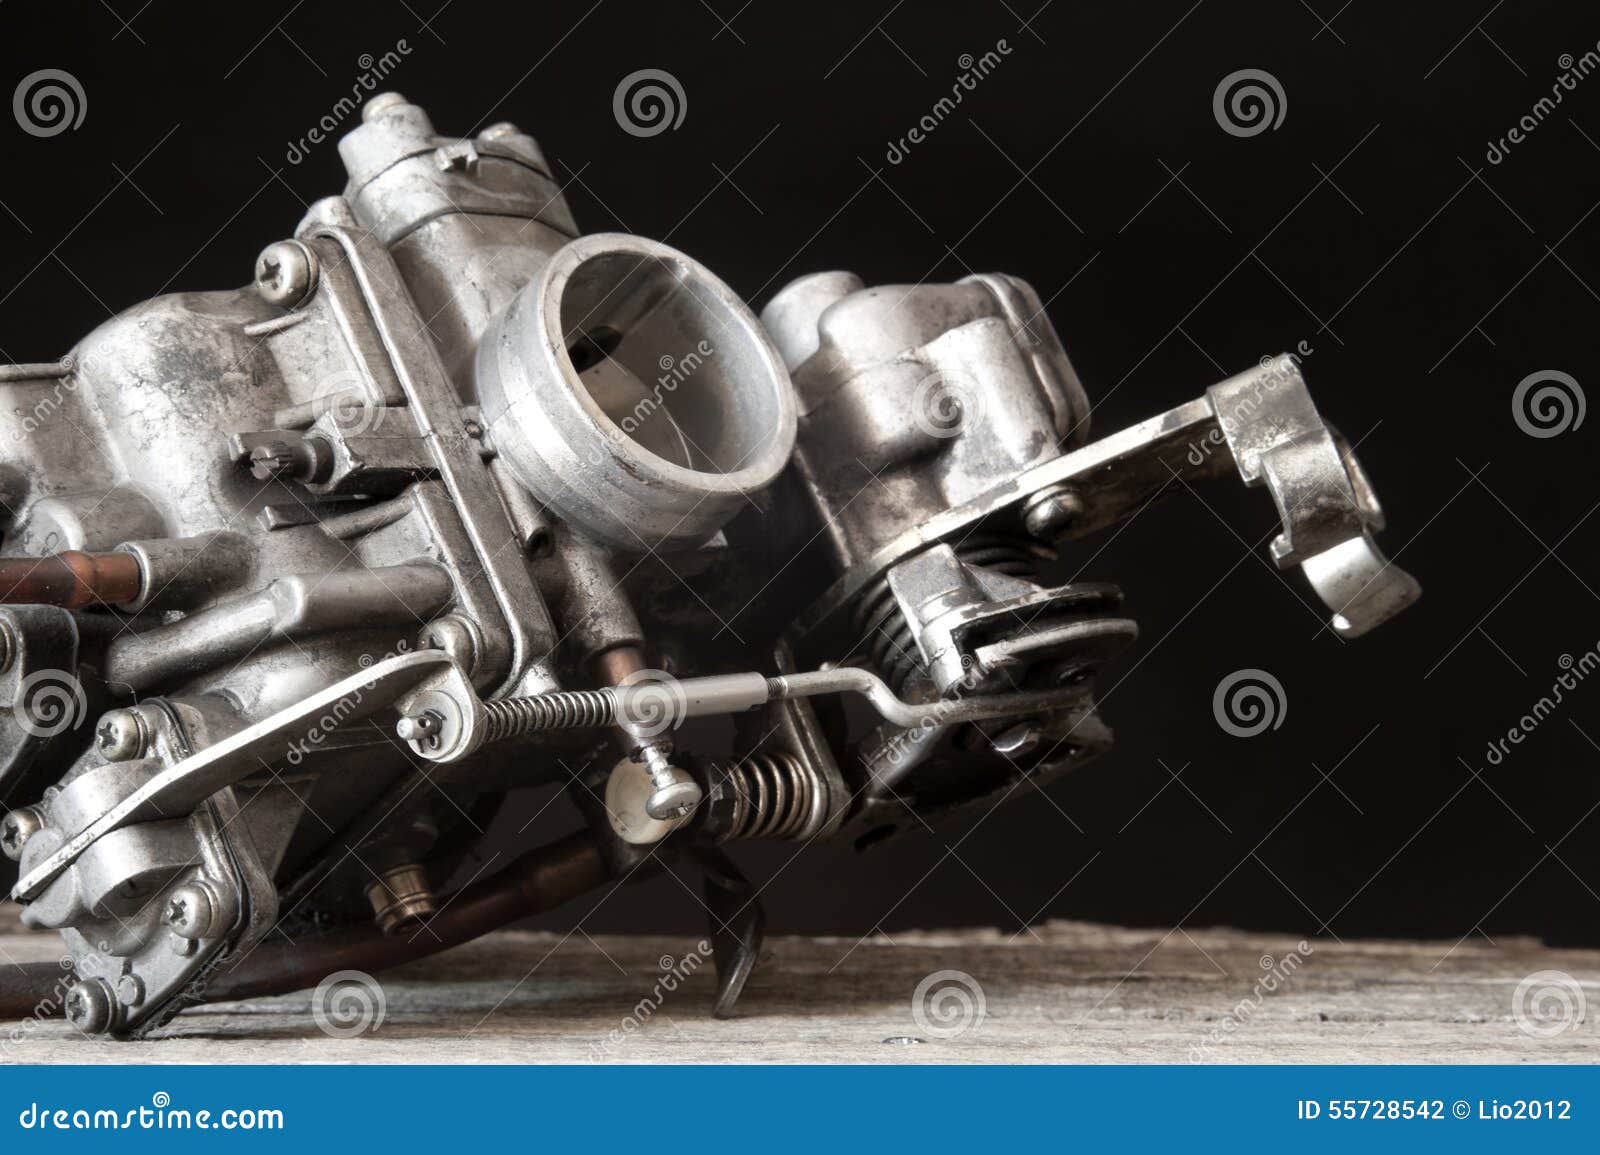 carburetor on wooden surface